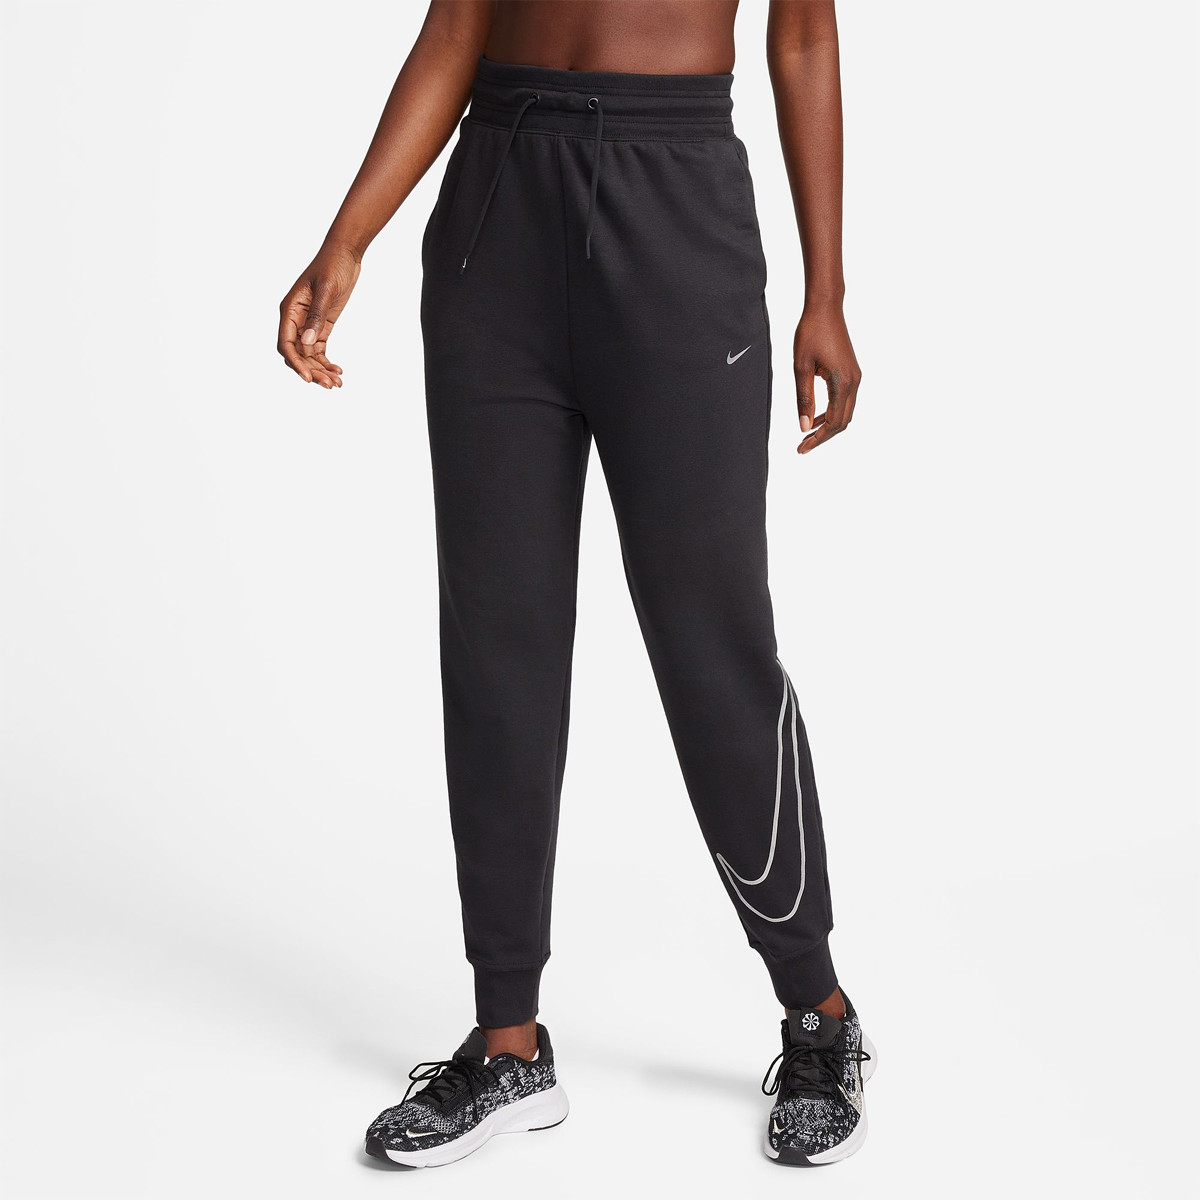 Women's Loose Trousers & Tights. Nike ID